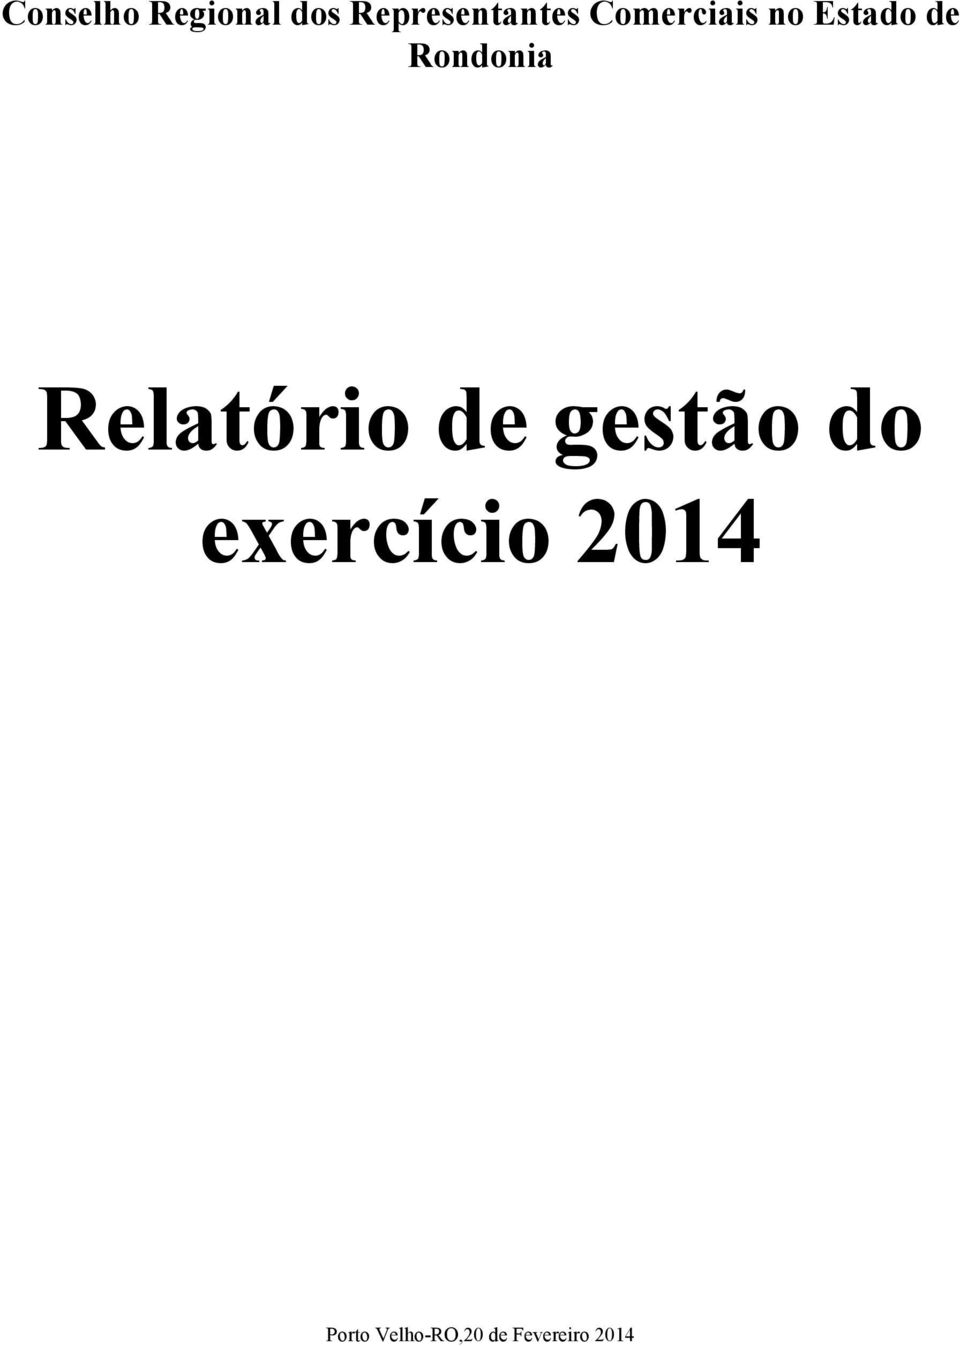 de Rondonia Relatório de gestão do